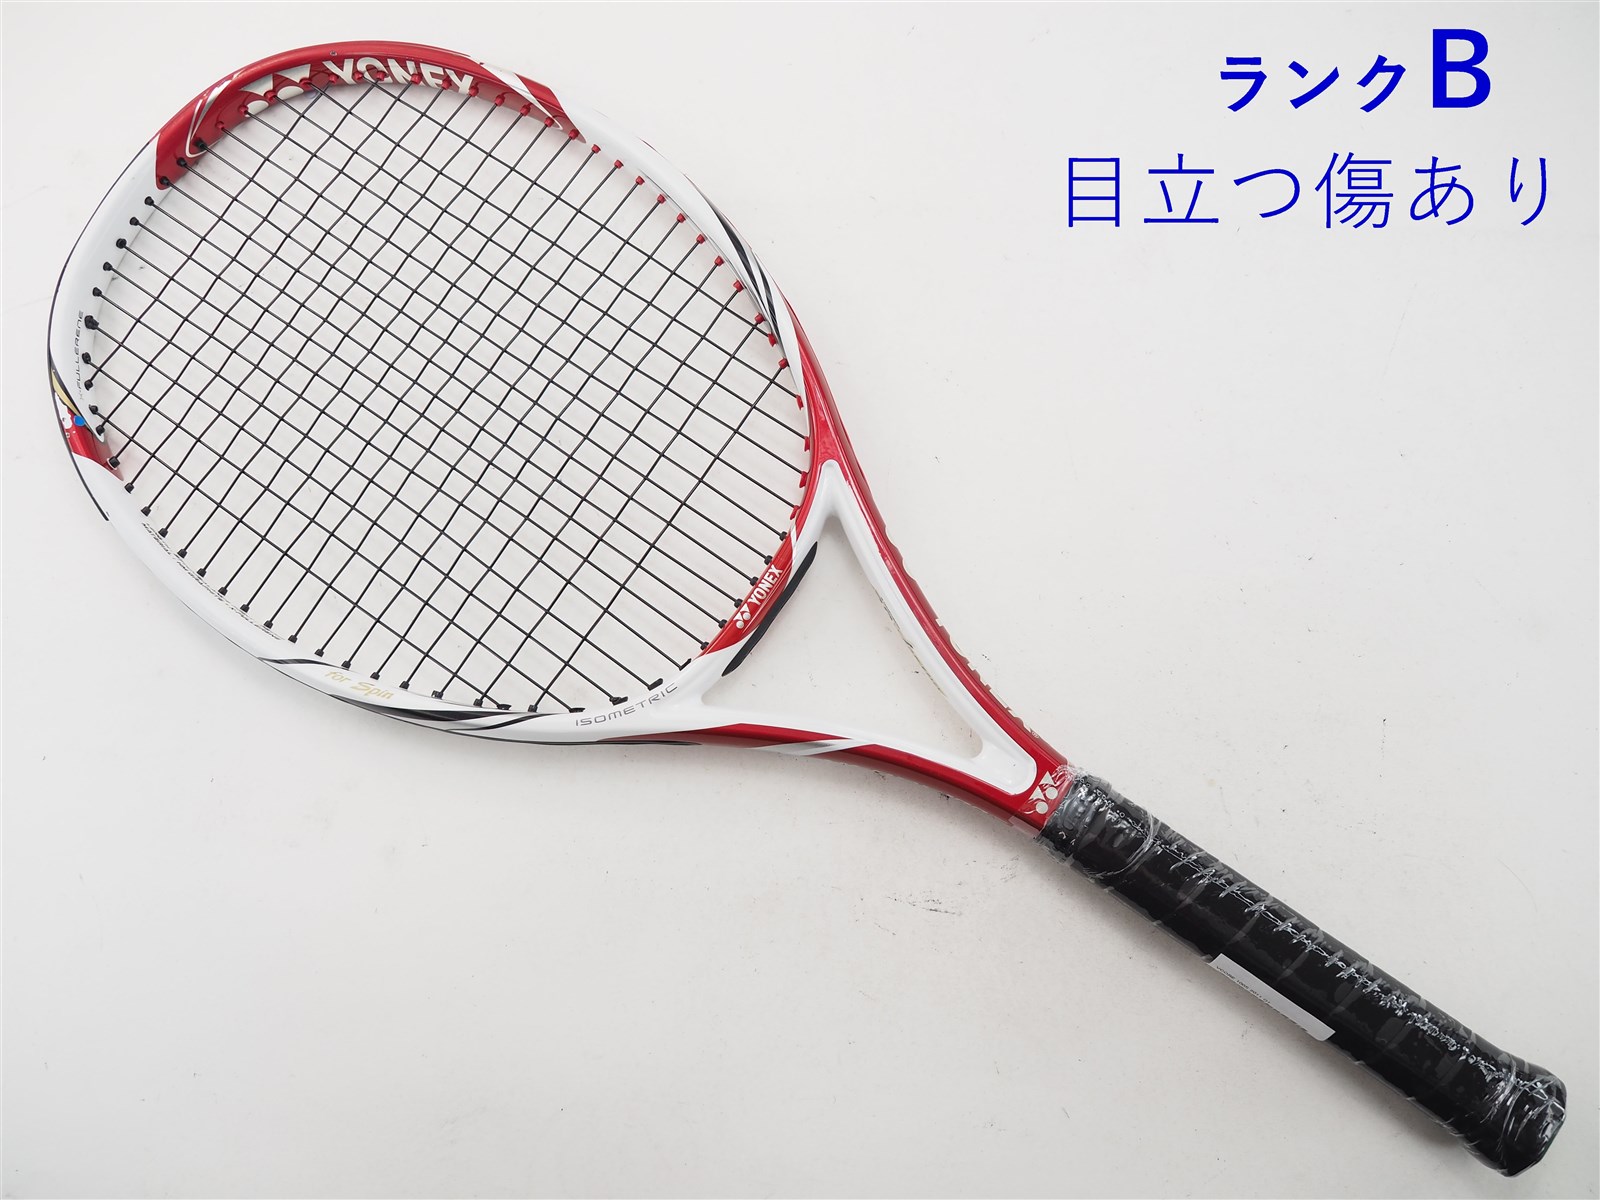 テニスラケット ヨネックス ブイコア エックスアイ 100 E 2012年モデル (G2)YONEX VCORE Xi 100 E 2012